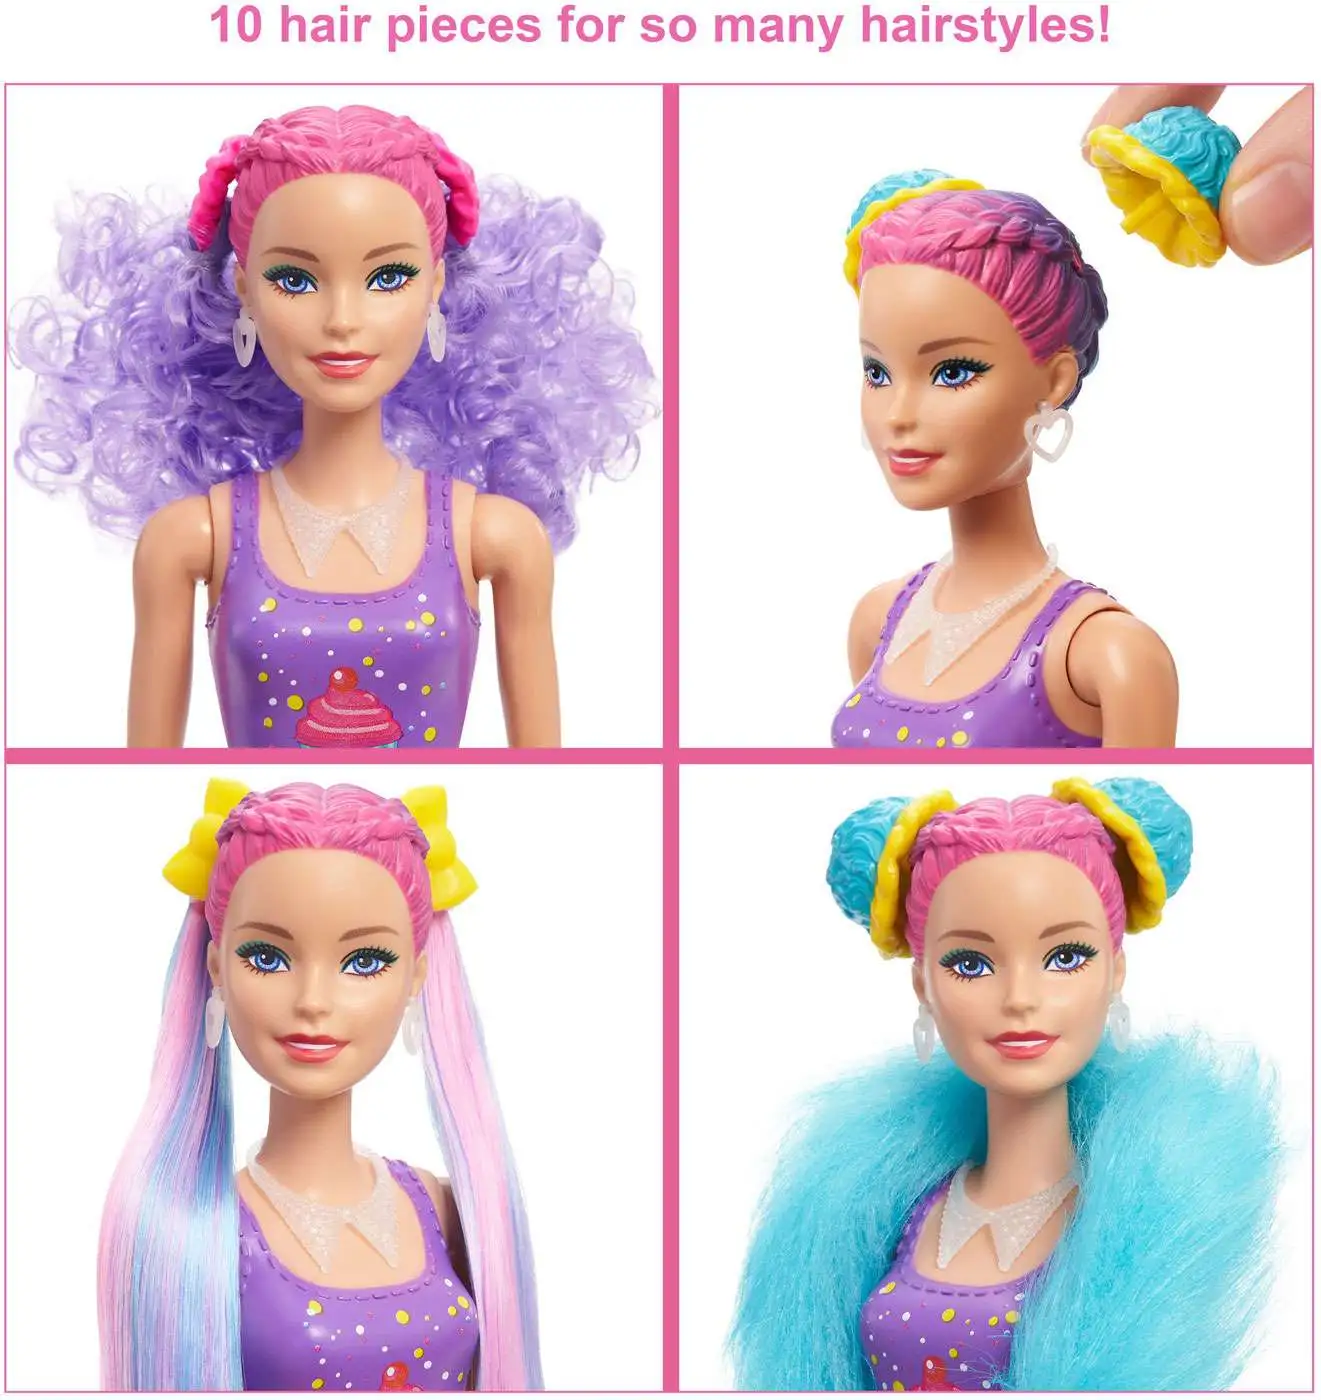 I got a new colour reveal Barbie!! : r/Barbie